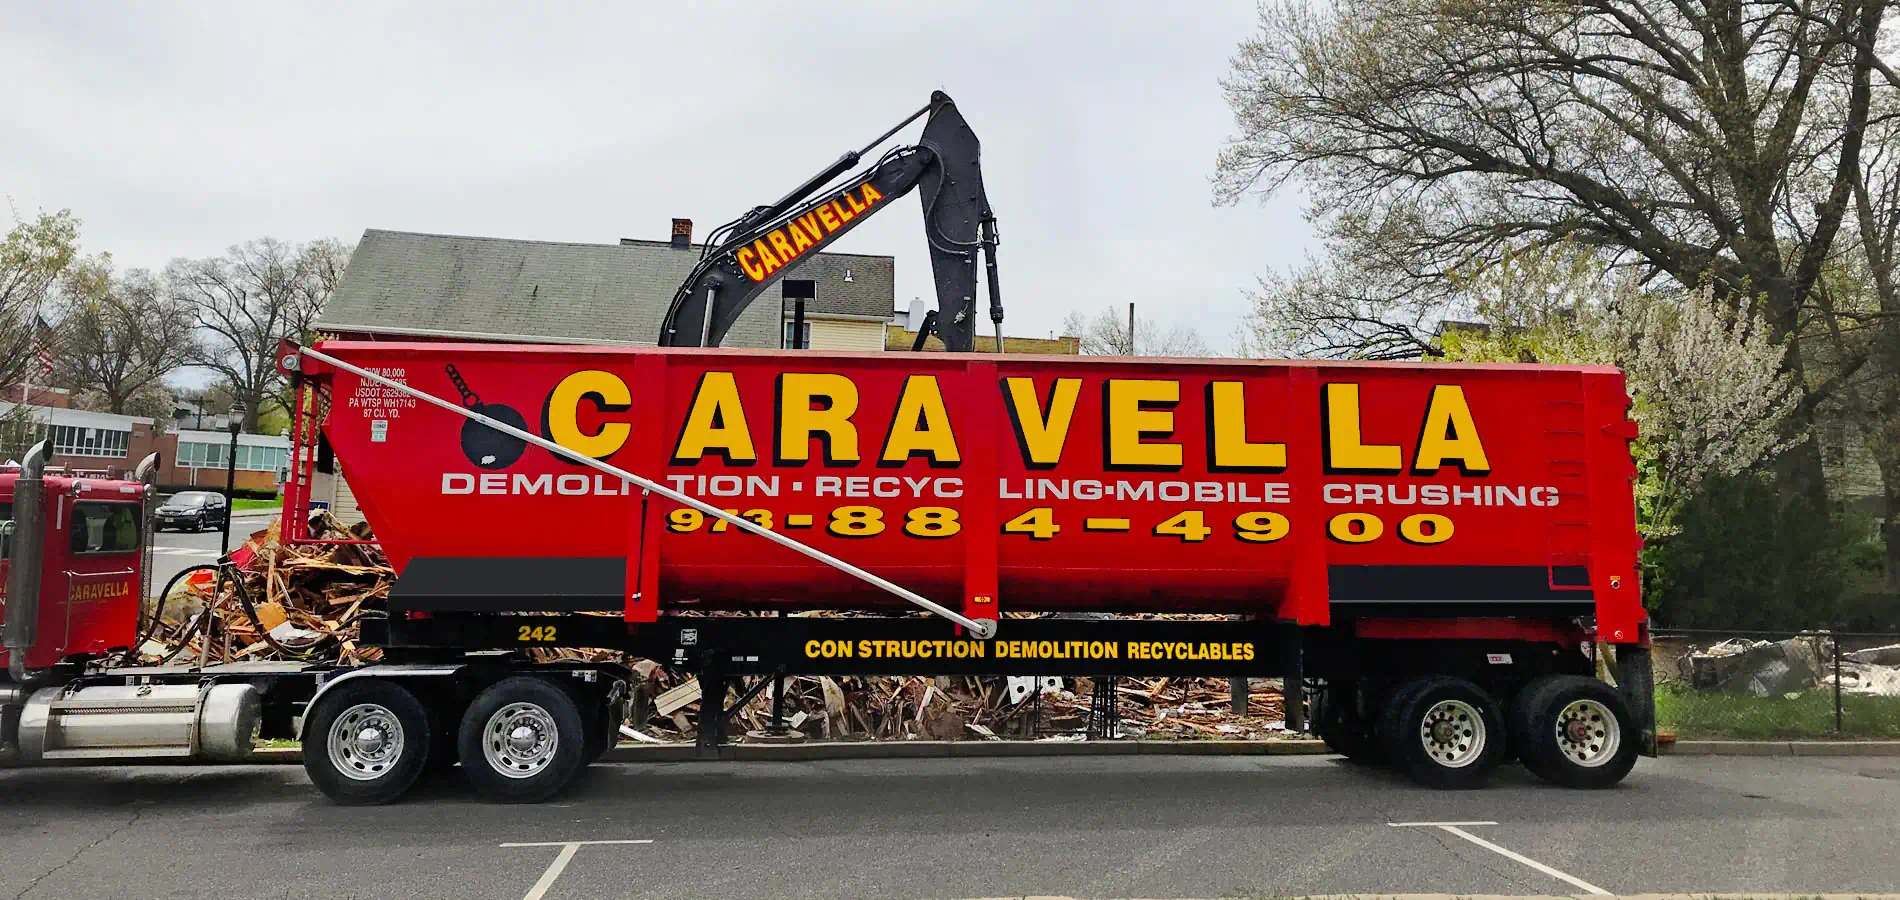 Demolition Services in Mount Olive, NJ 07828 | Caravella Demolition